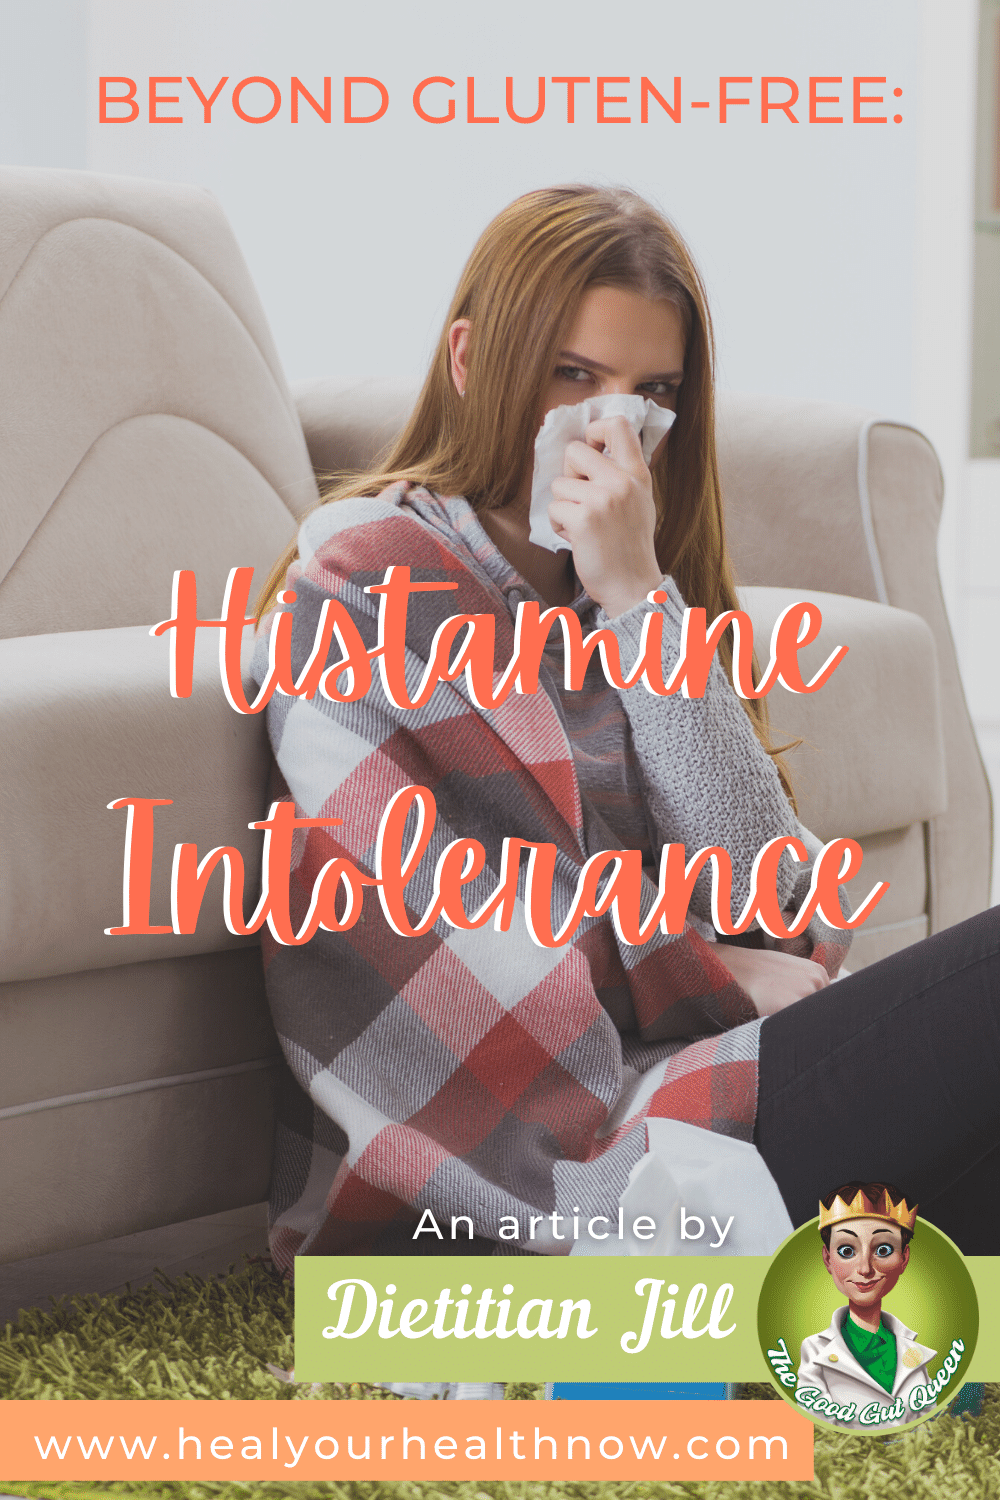 Beyond Gluten-Free: Histamine Intolerance